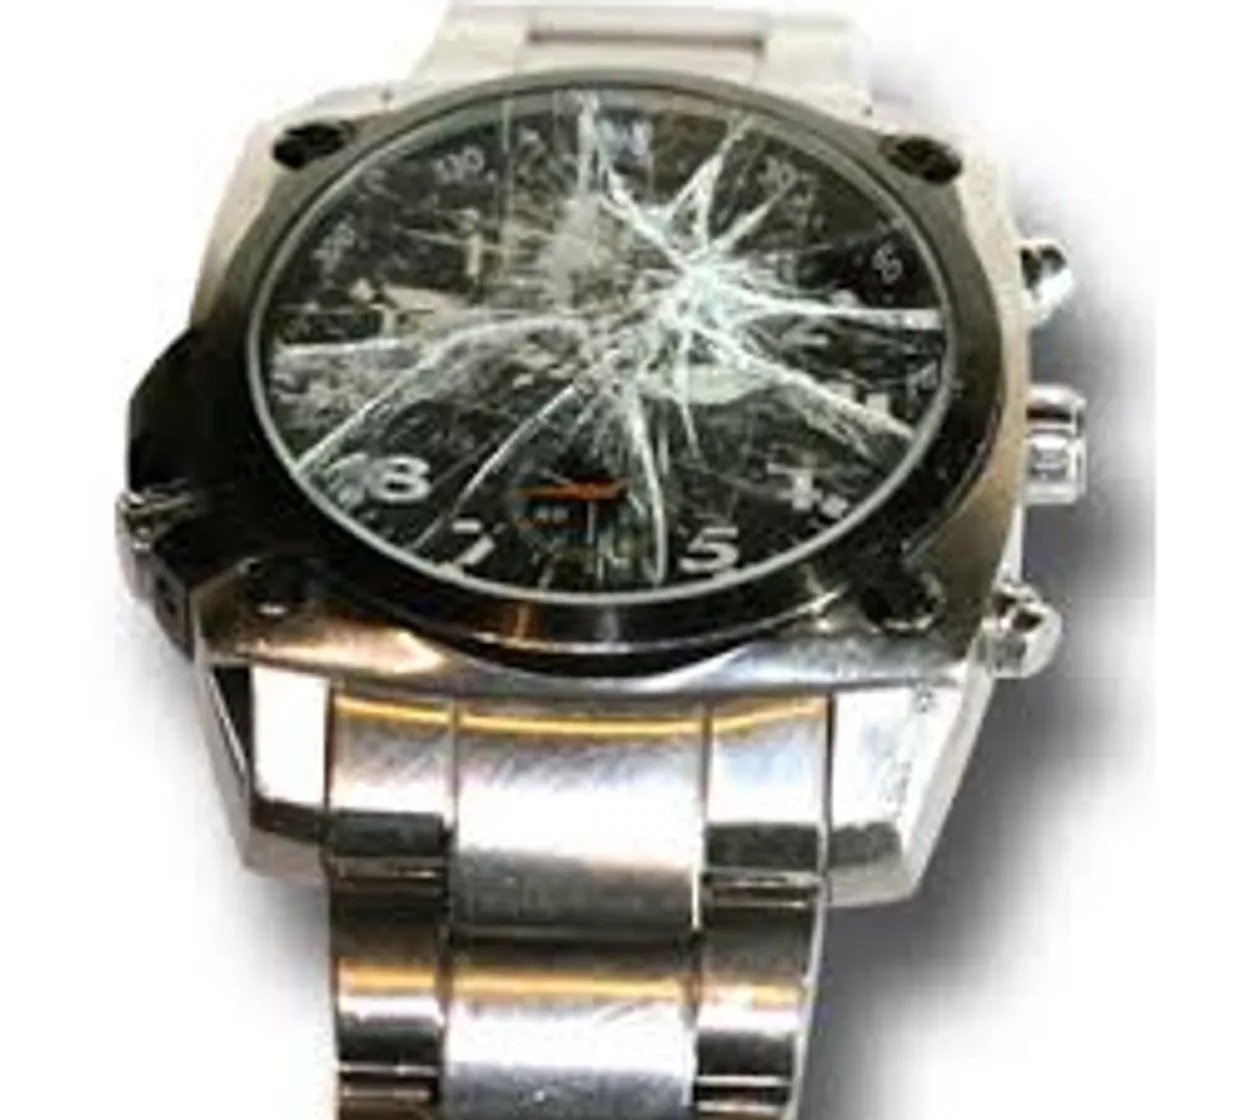 Horlogerie Kronos - horloge reparaties. Uitstekende service,hoge kwaliteit en scherpe prijzen!